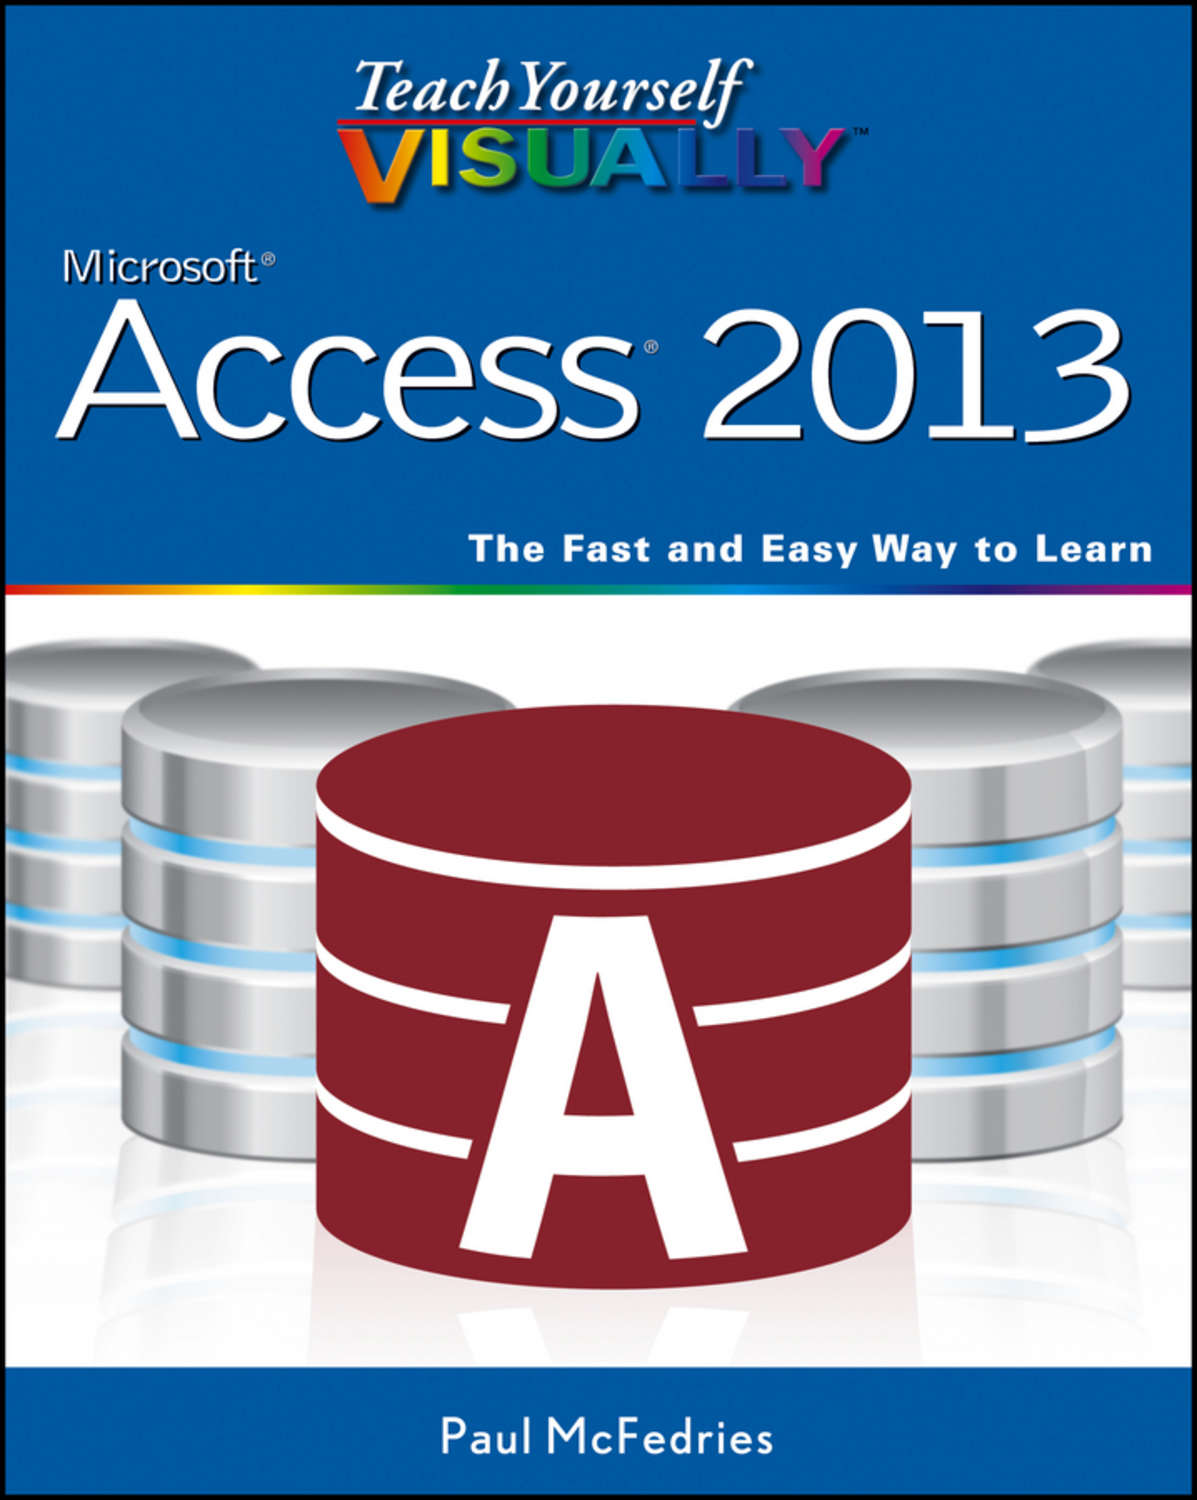 Visual access